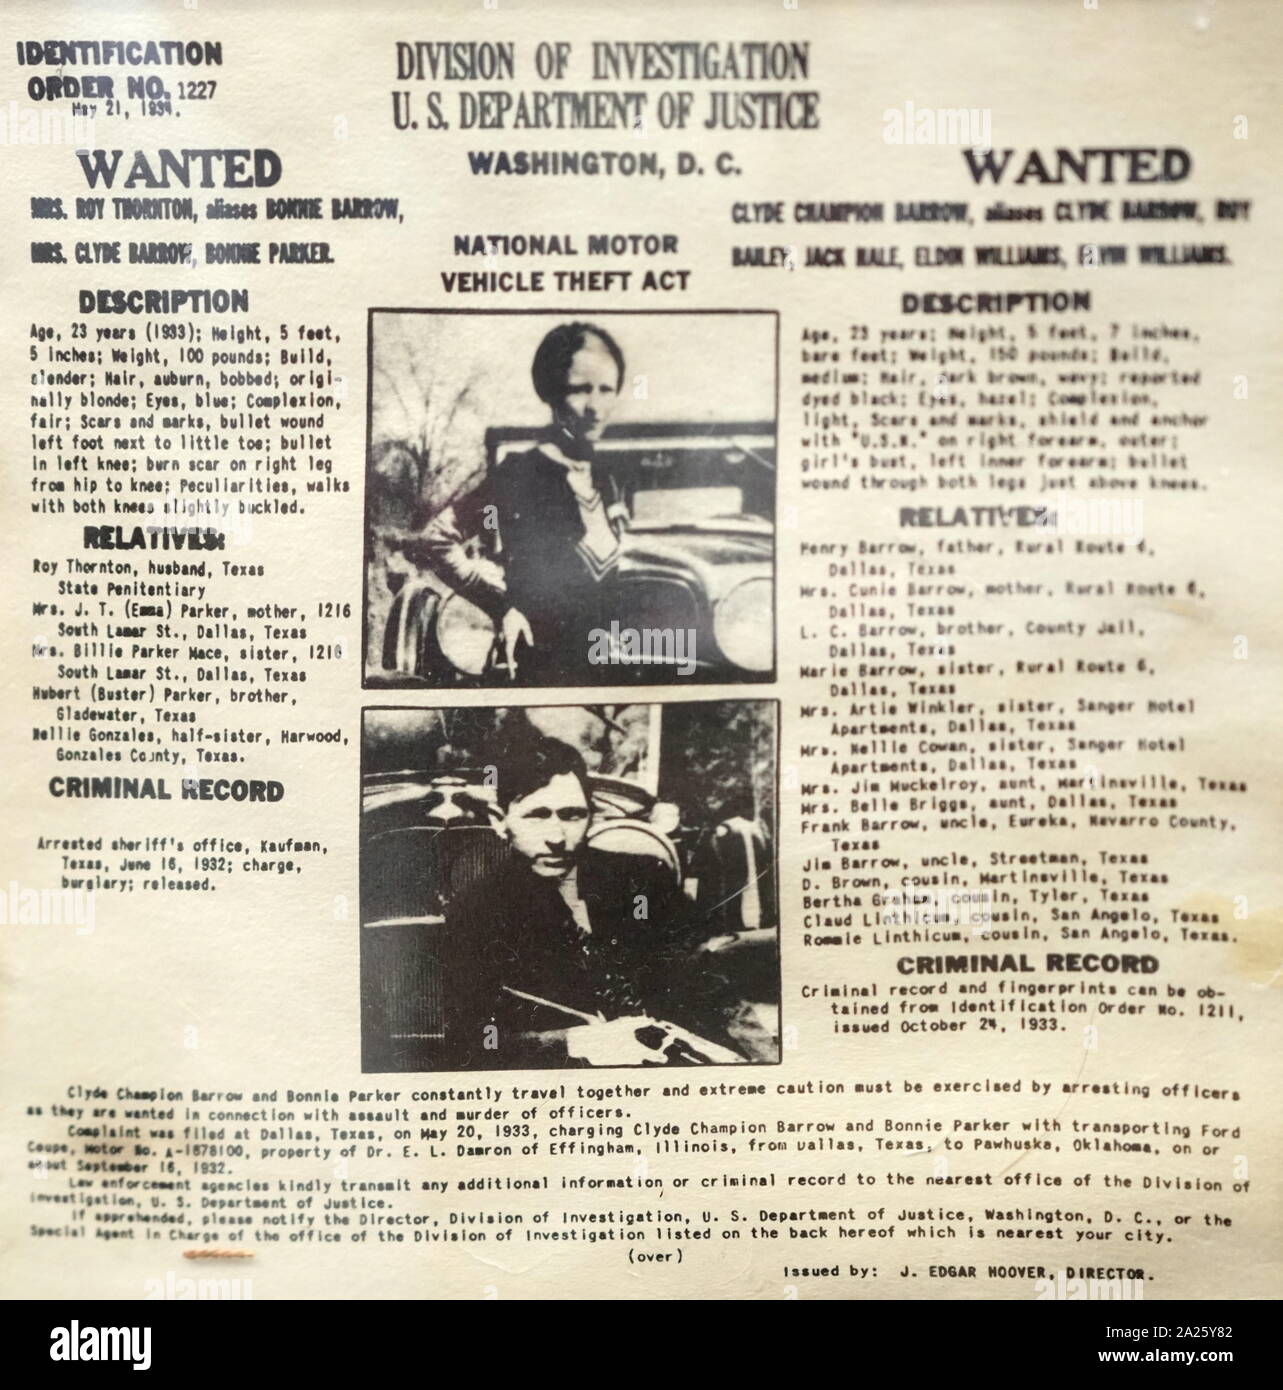 Manifesto Wanted per Bonnie e Clyde. Bonnie Elizabeth Parker (1910-1934) e Clyde Chestnut Barrow (1909-1934) criminali americani che hanno viaggiato intorno al centro di Stati Uniti con la loro pista durante la Grande Depressione. Foto Stock